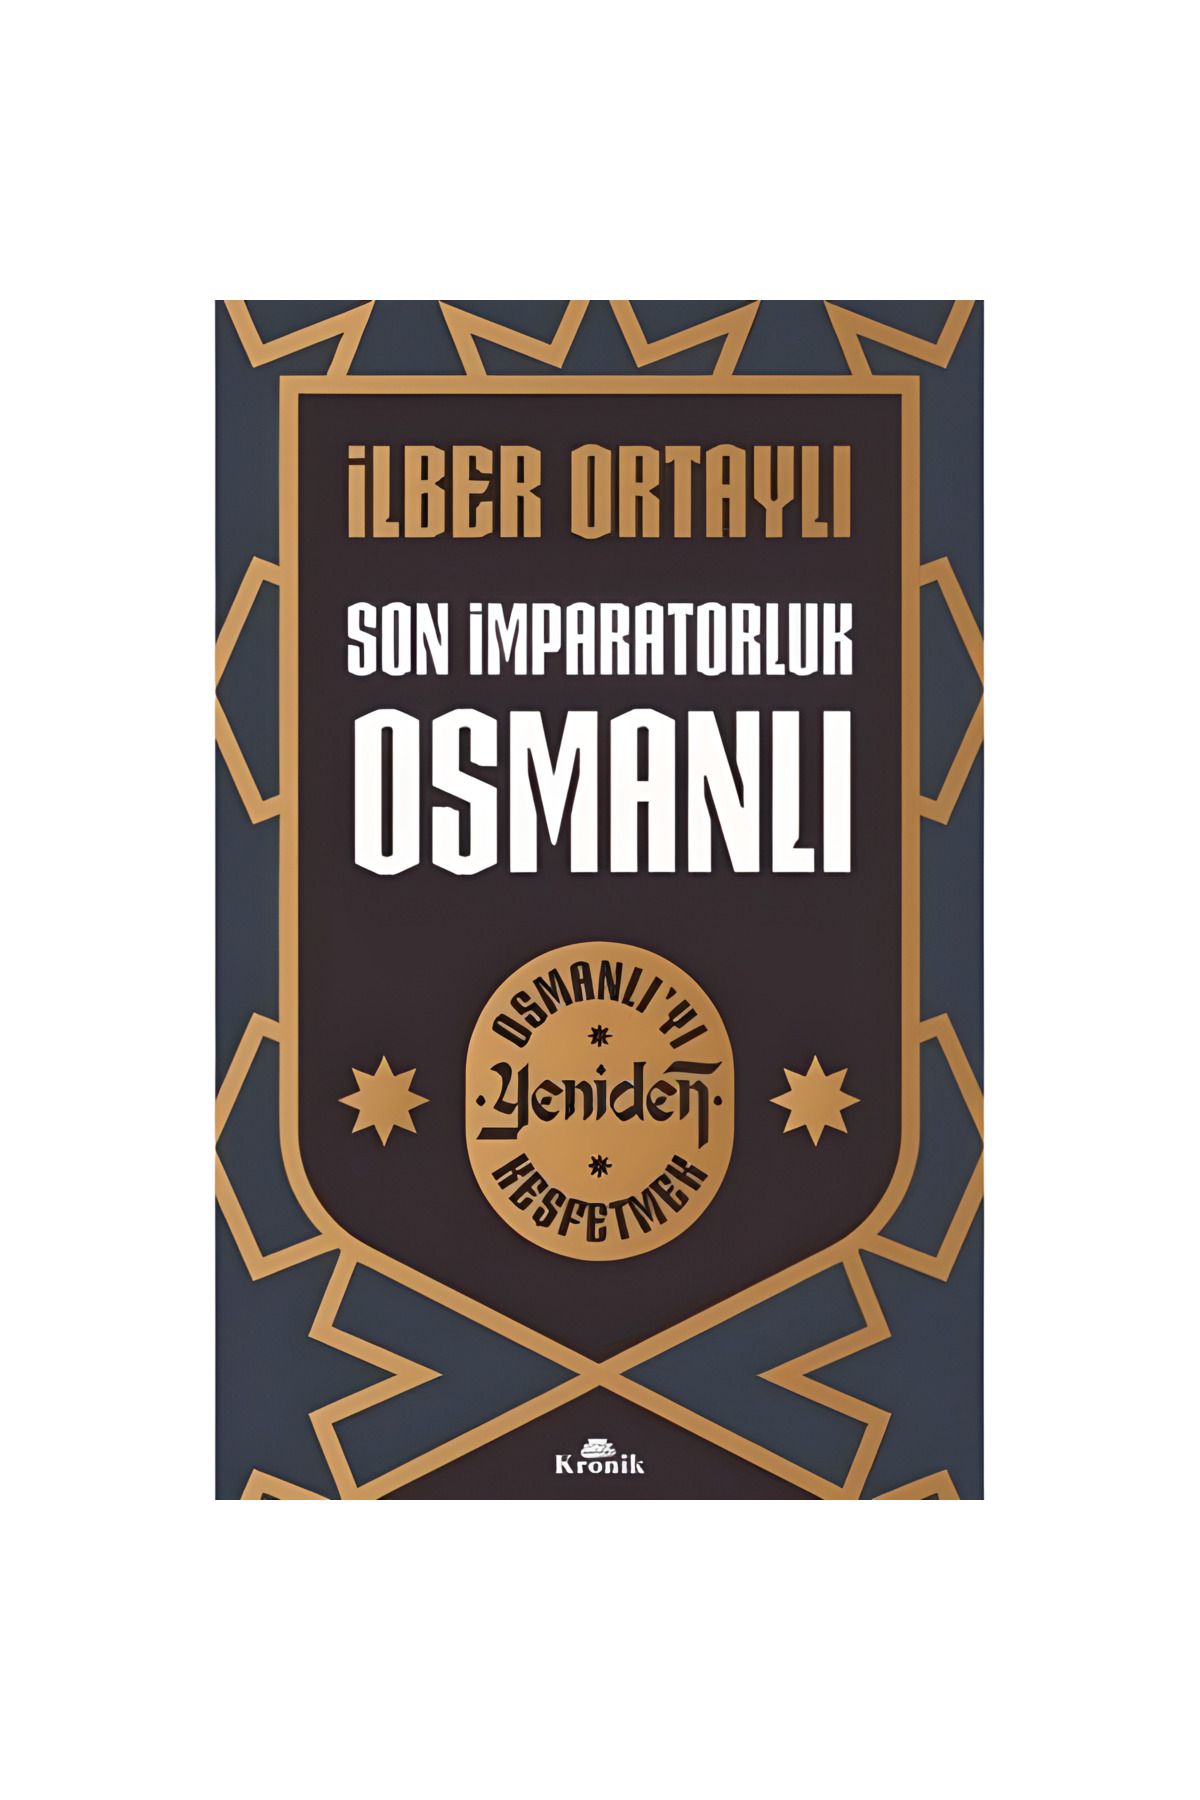 Kronik Kitap Son İmparatorluk Osmanlı Osmanlı’yı Yeniden Keşfetmek 2 ilber Ortaylı imzalı